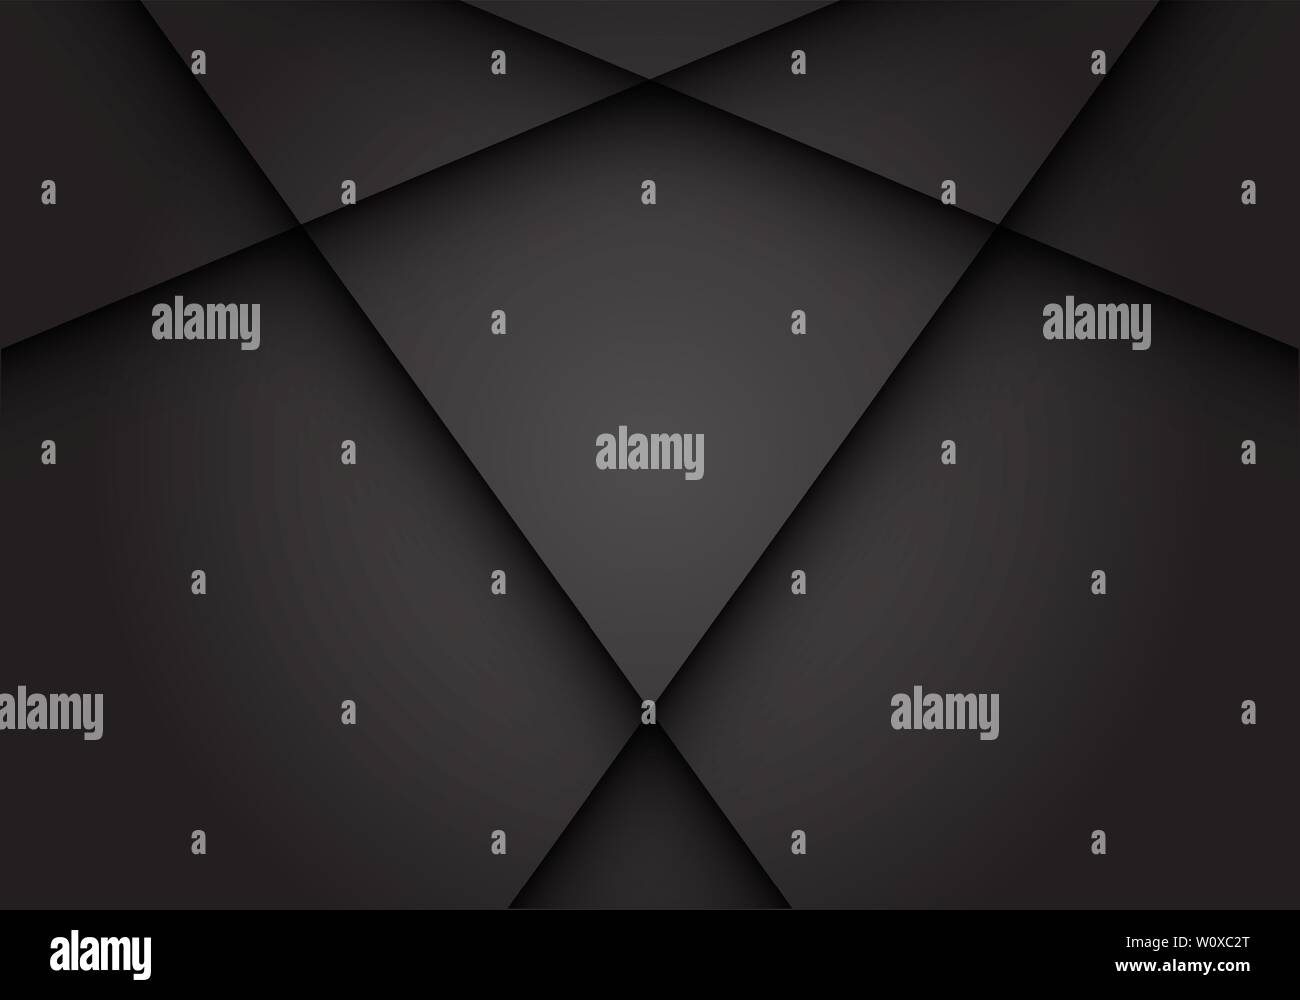 Résumé gris foncé ombre de la croix de l'espace vierge moderne design futuristic background vector illustration. Illustration de Vecteur